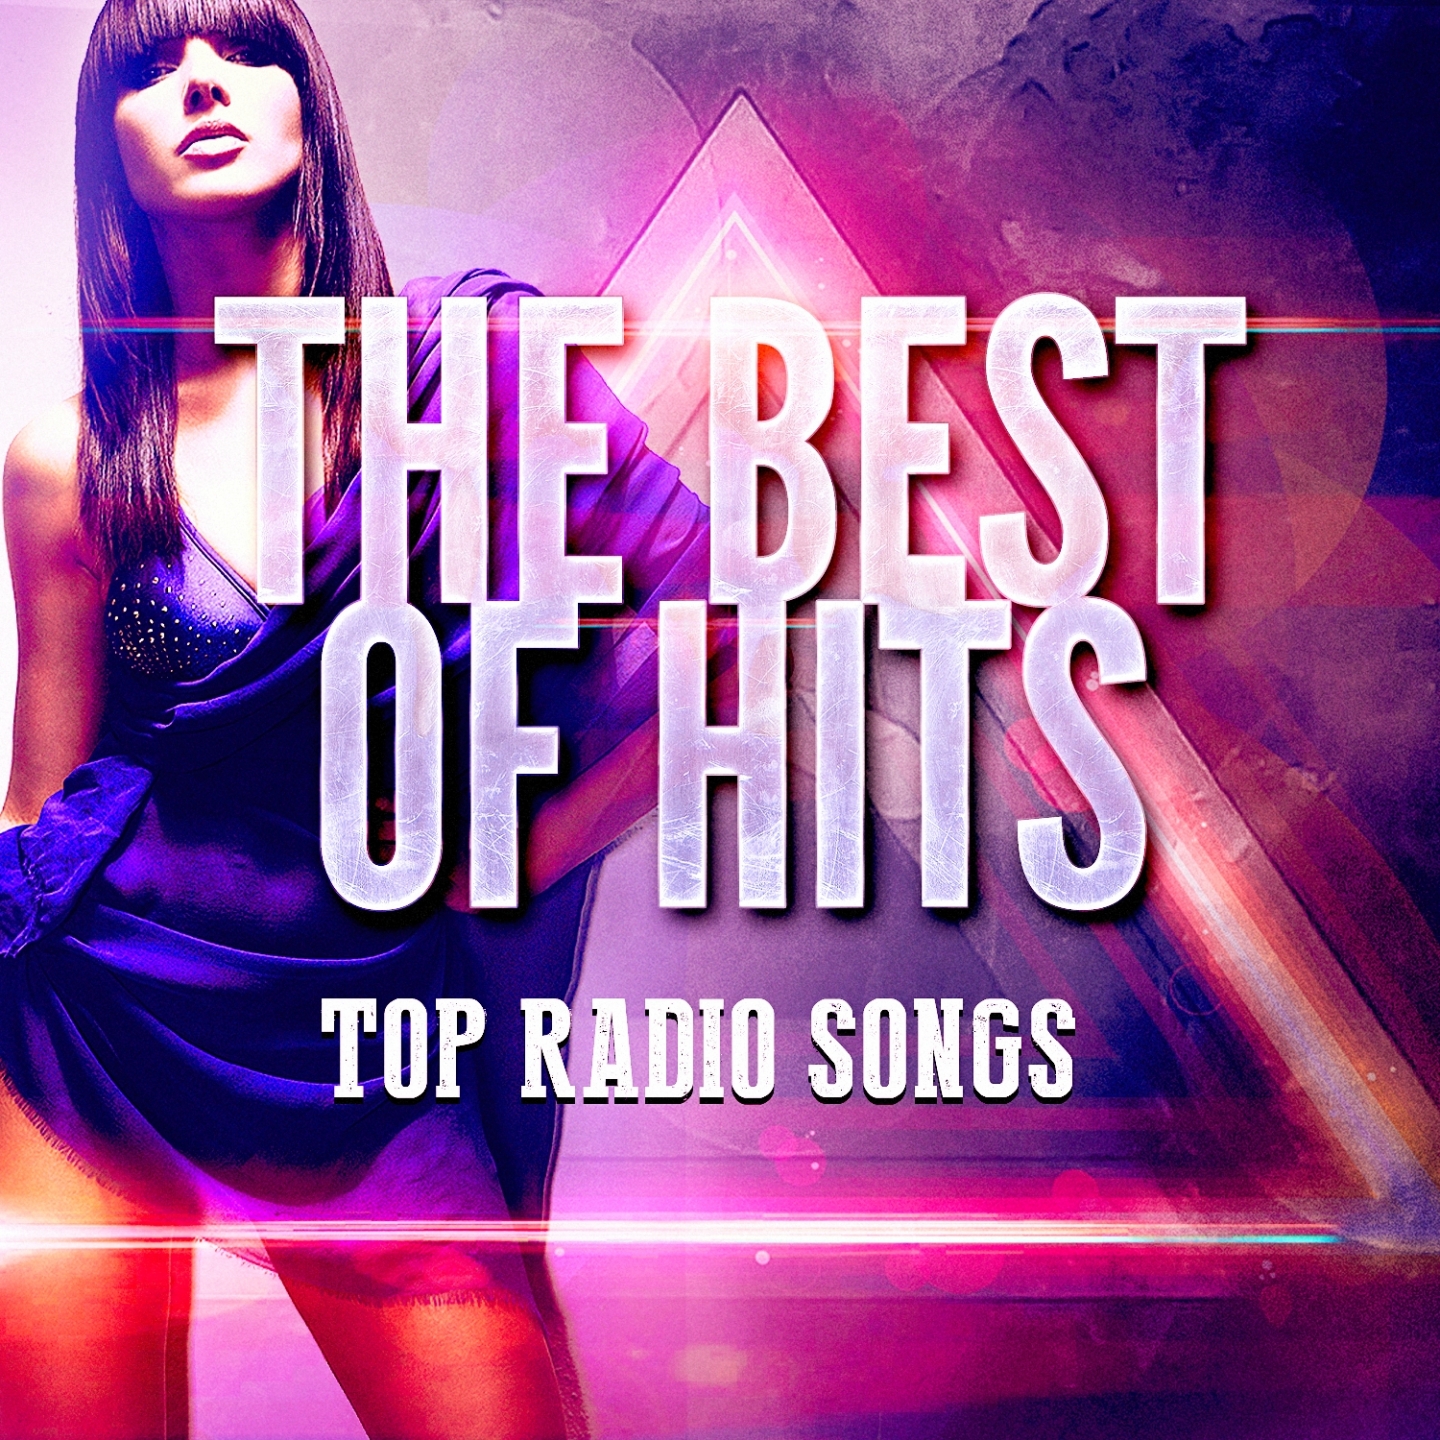 Top Radio Songs